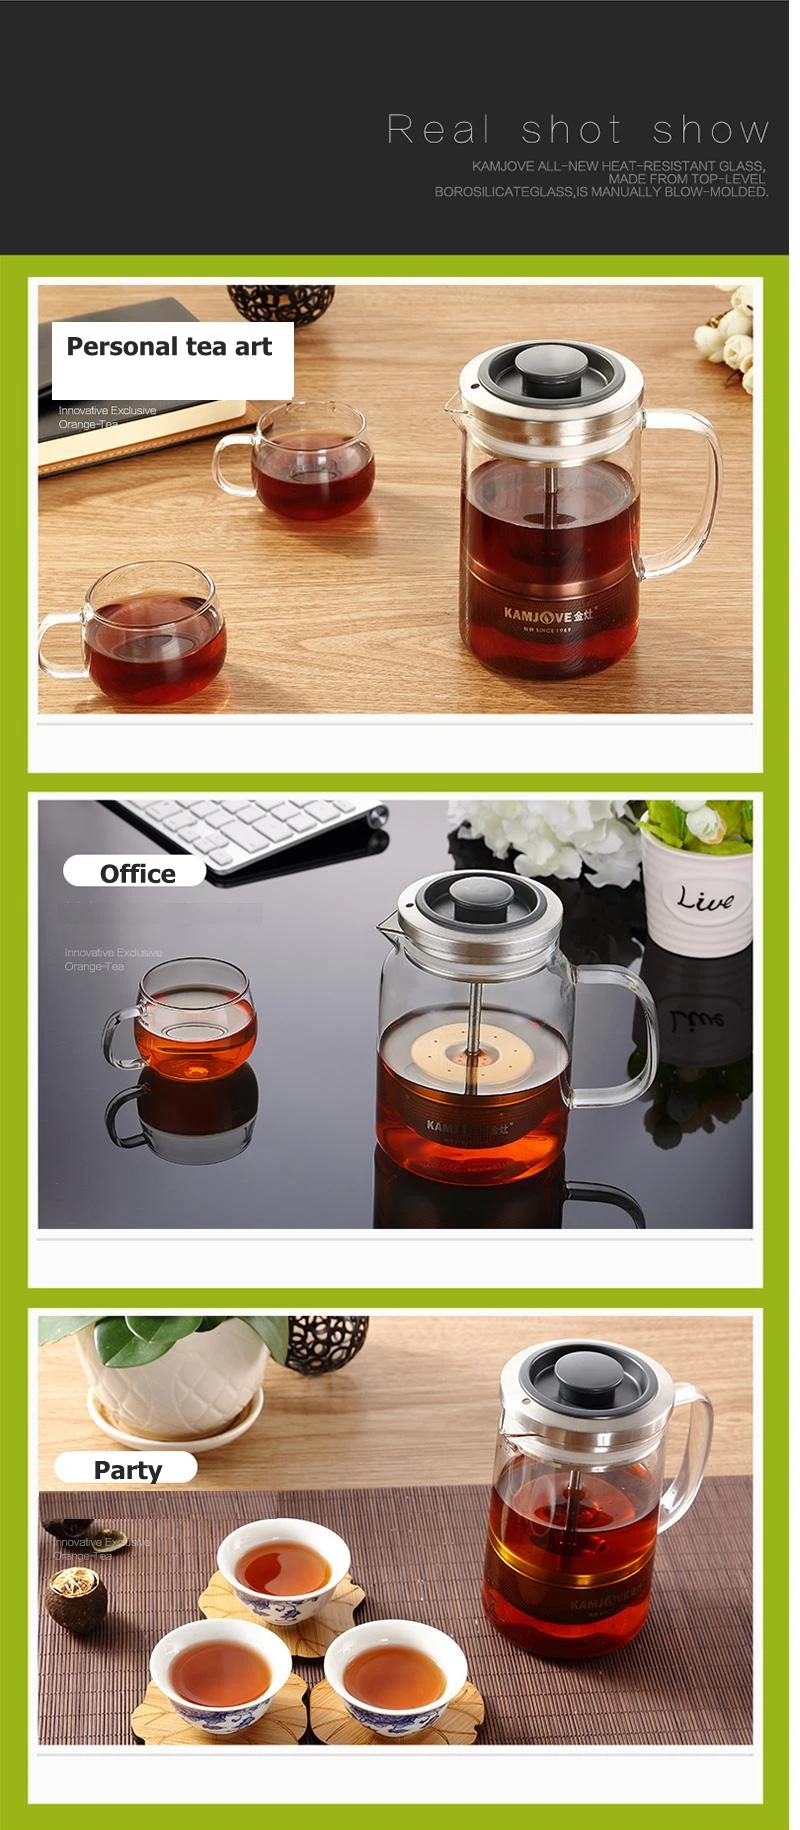 Kamjove чайник давления кофейник Pu 'er чайный горшок Френч-прессы чайник для пуэр оранжевый A75 380 мл, A76 560 мл